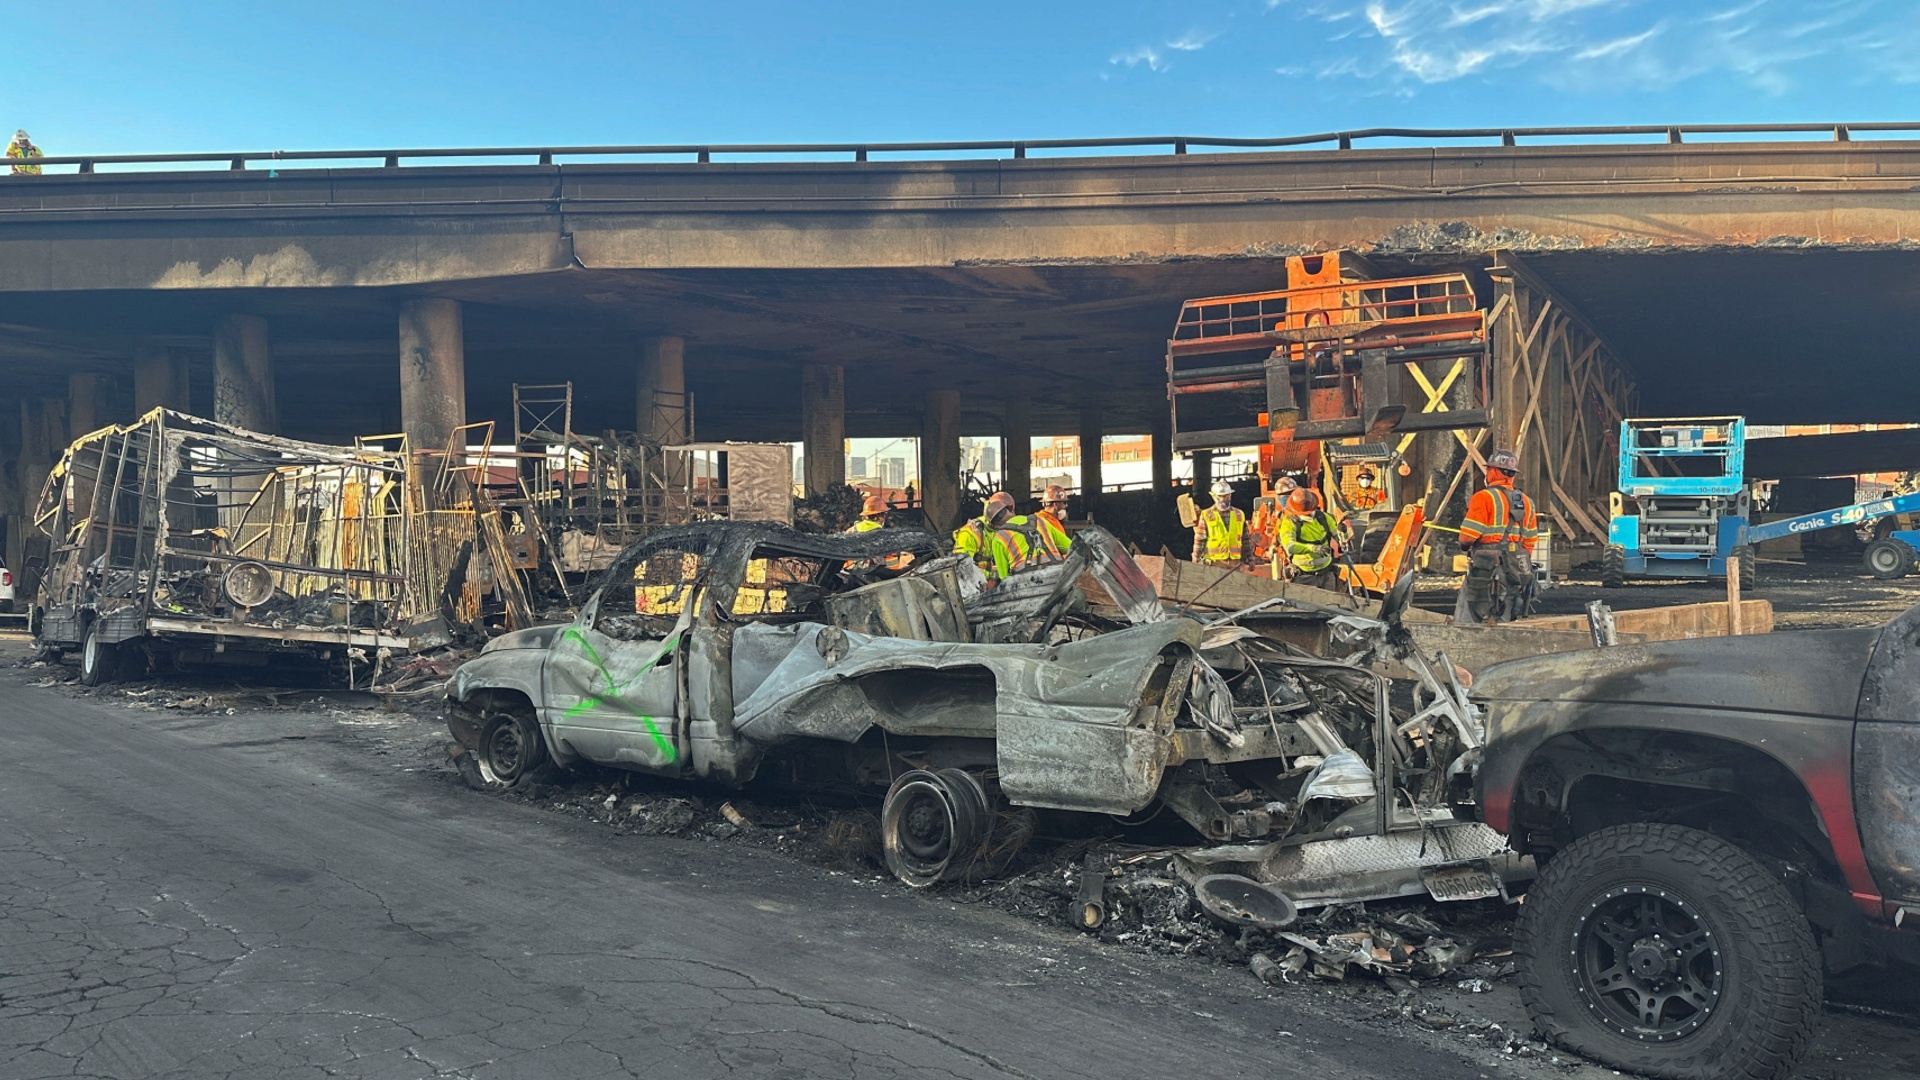 Чиновники: причиной масштабного пожара на автостраде в Лос-Анджелесе был поджог